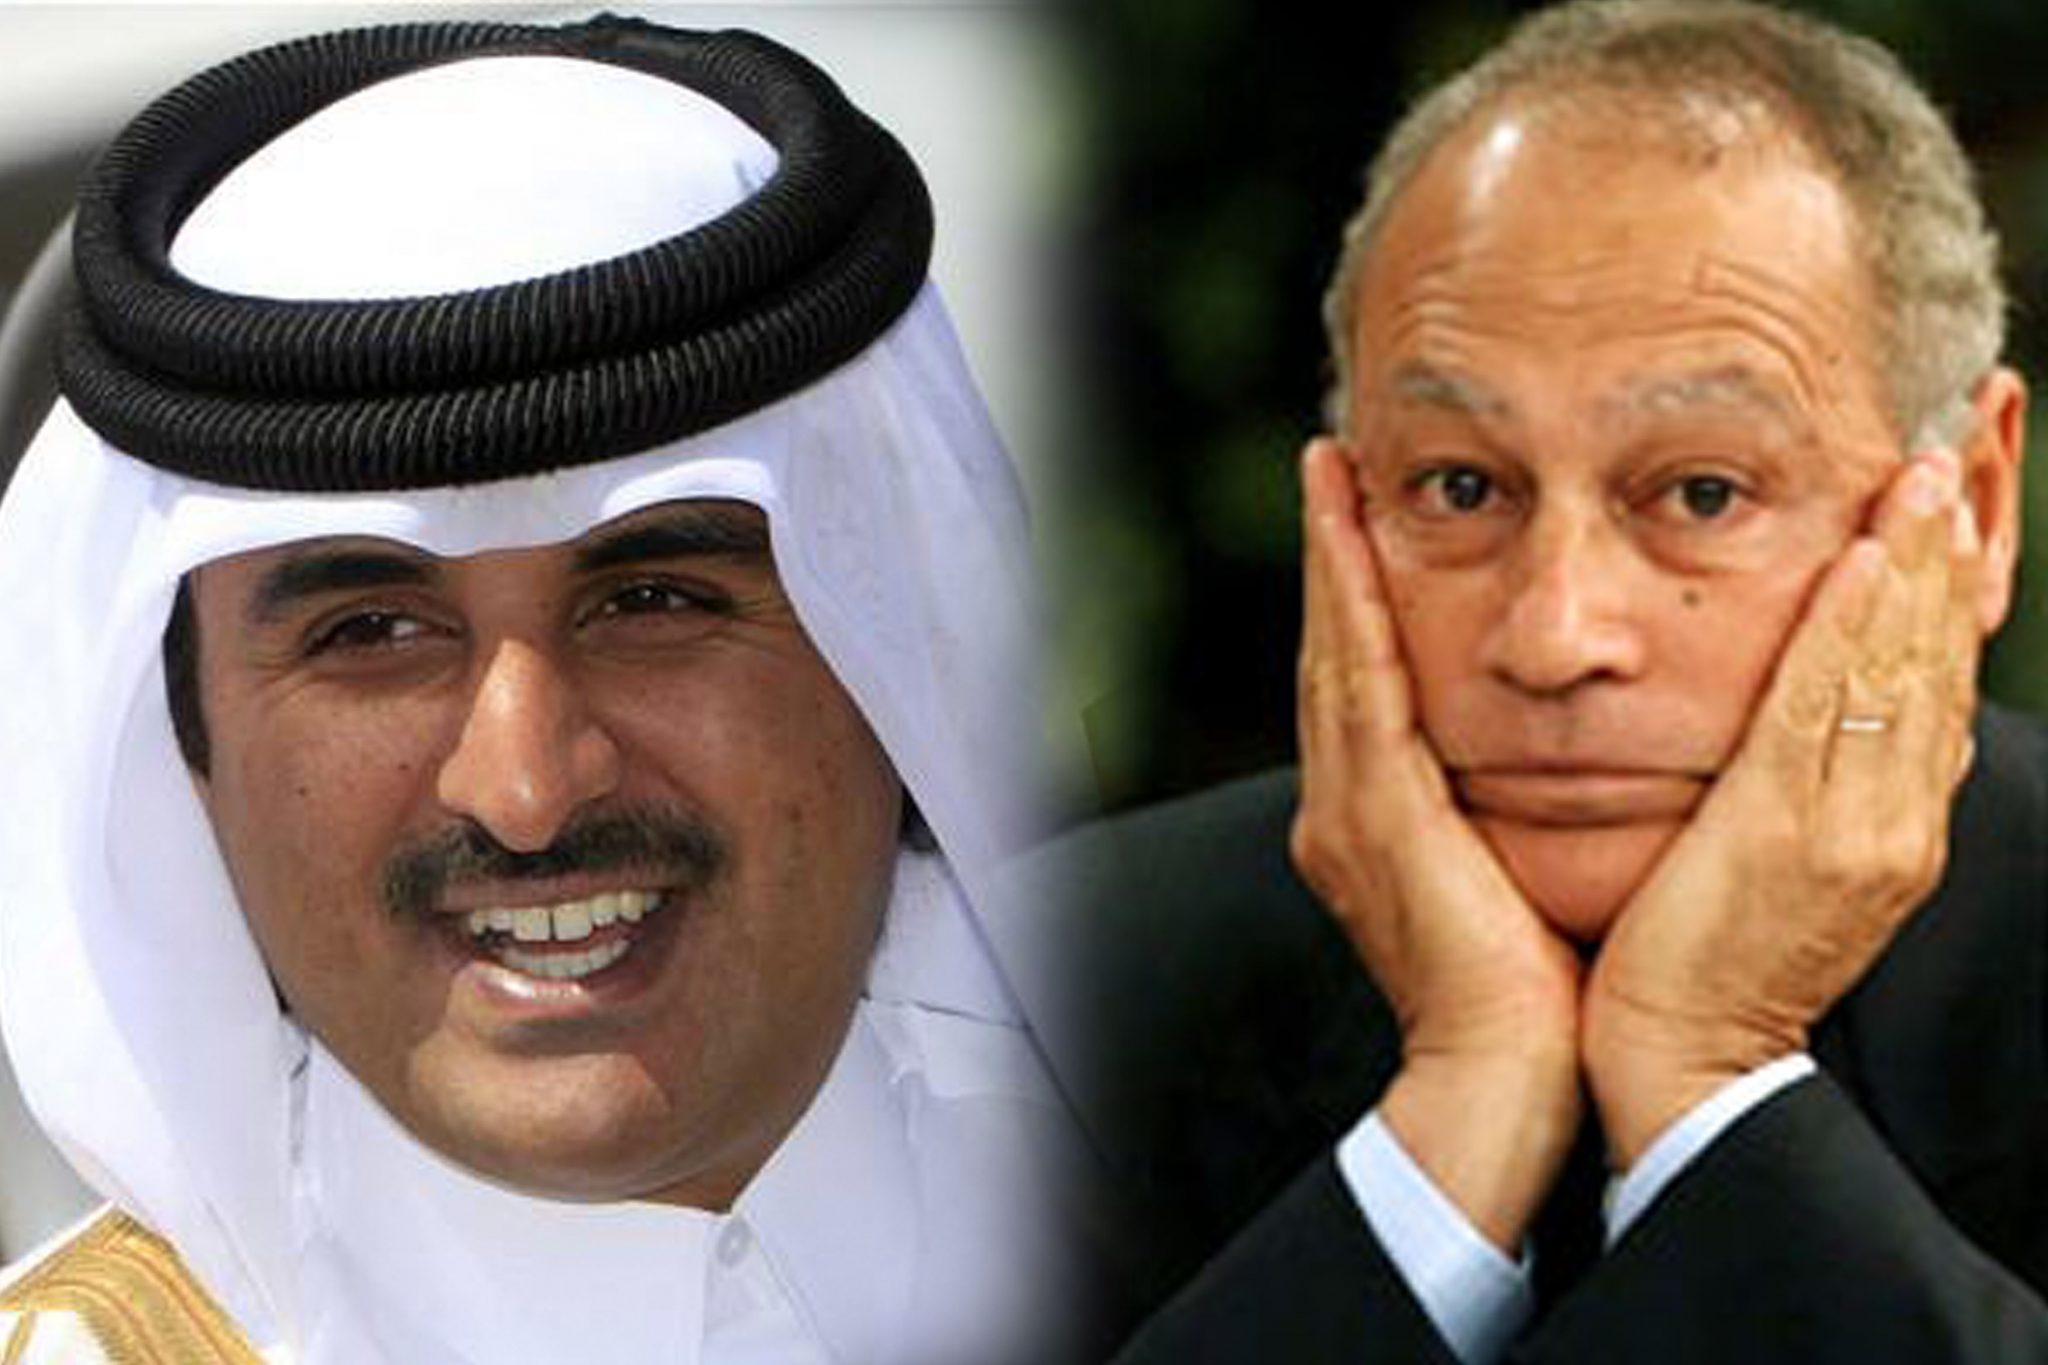   أبو الغيط يجري مباحثات مع أمير قطر حول التحضير للقمة العربية وقضايا المنطقة